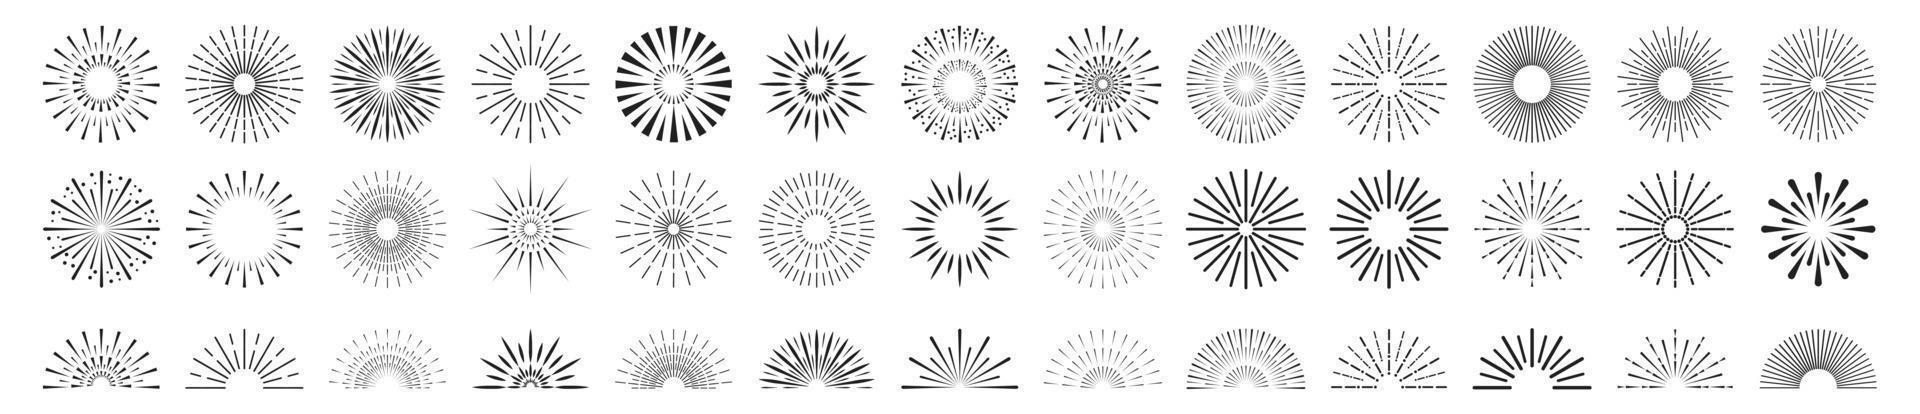 conjunto de iconos de rayos de sol.colección de rayos de sol vintage.ilustración vectorial vector